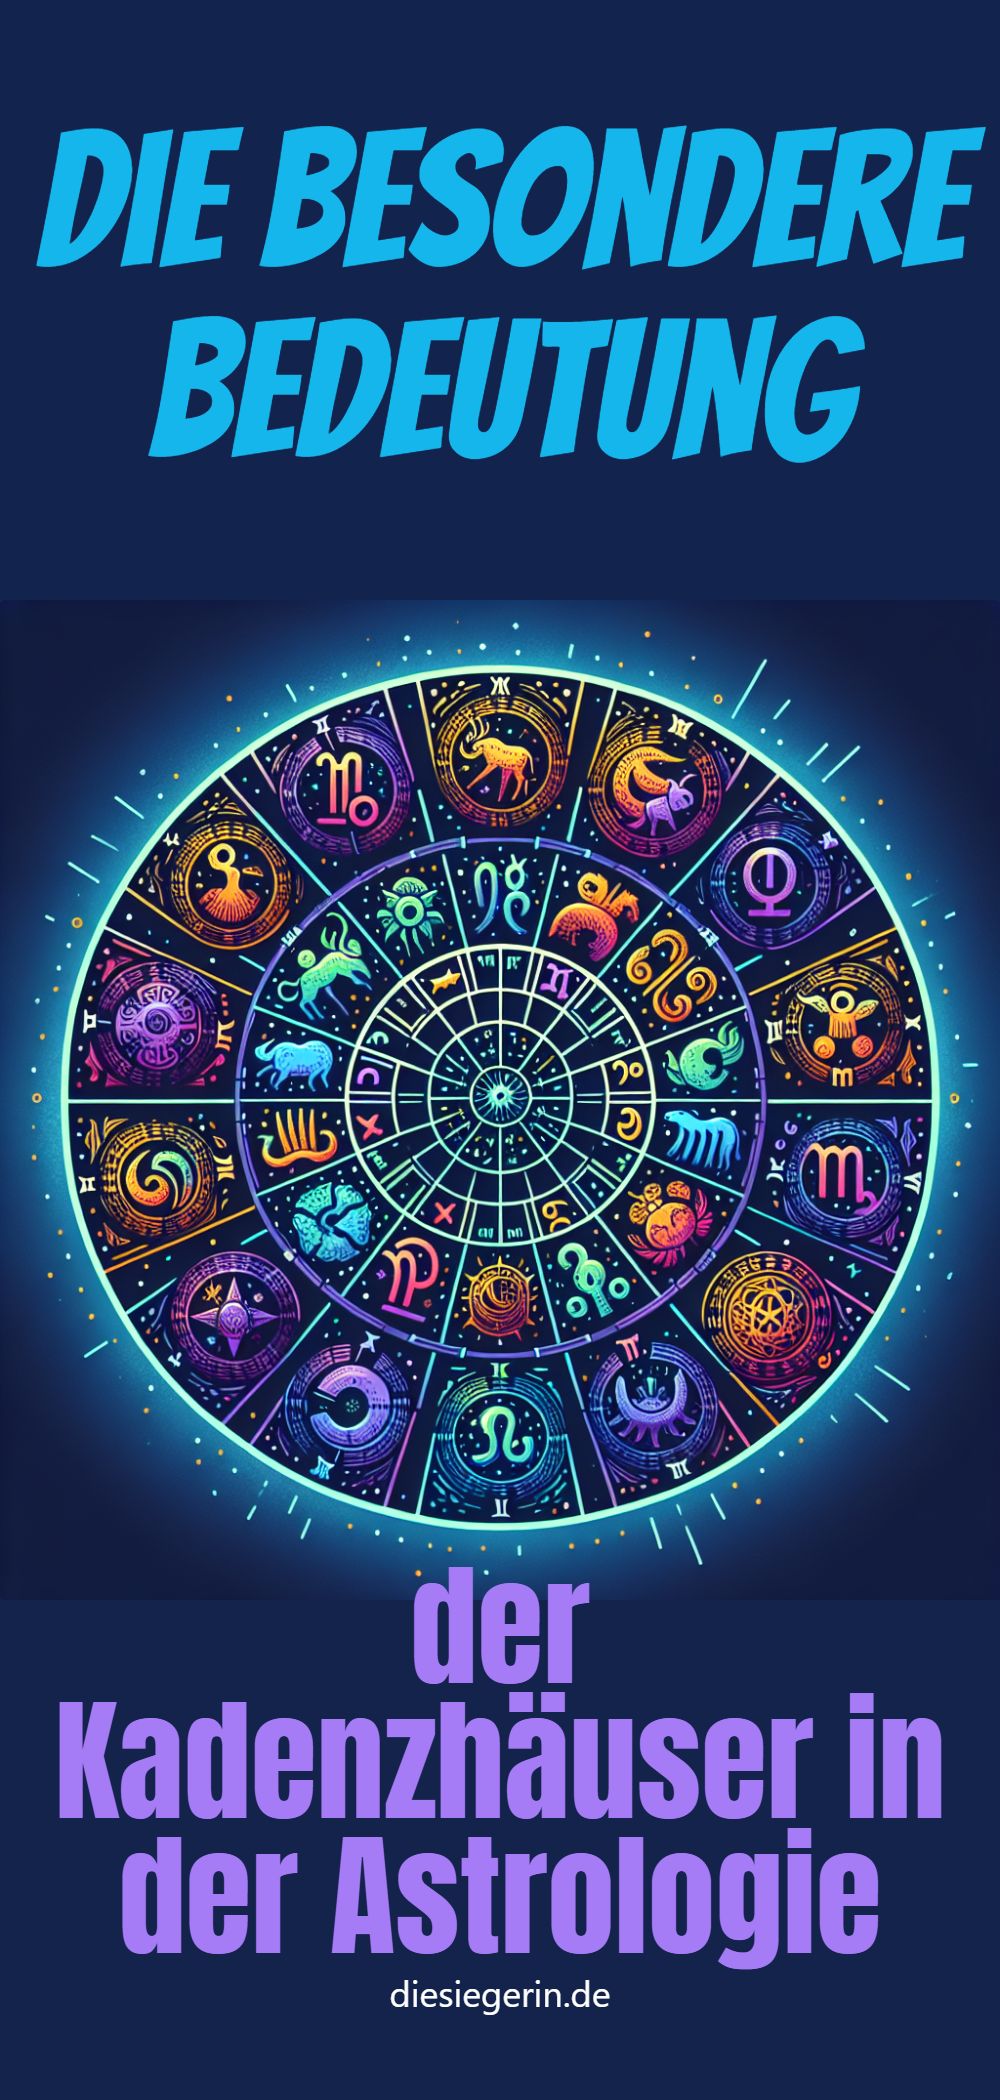 Die besondere Bedeutung der Kadenzhäuser in der Astrologie